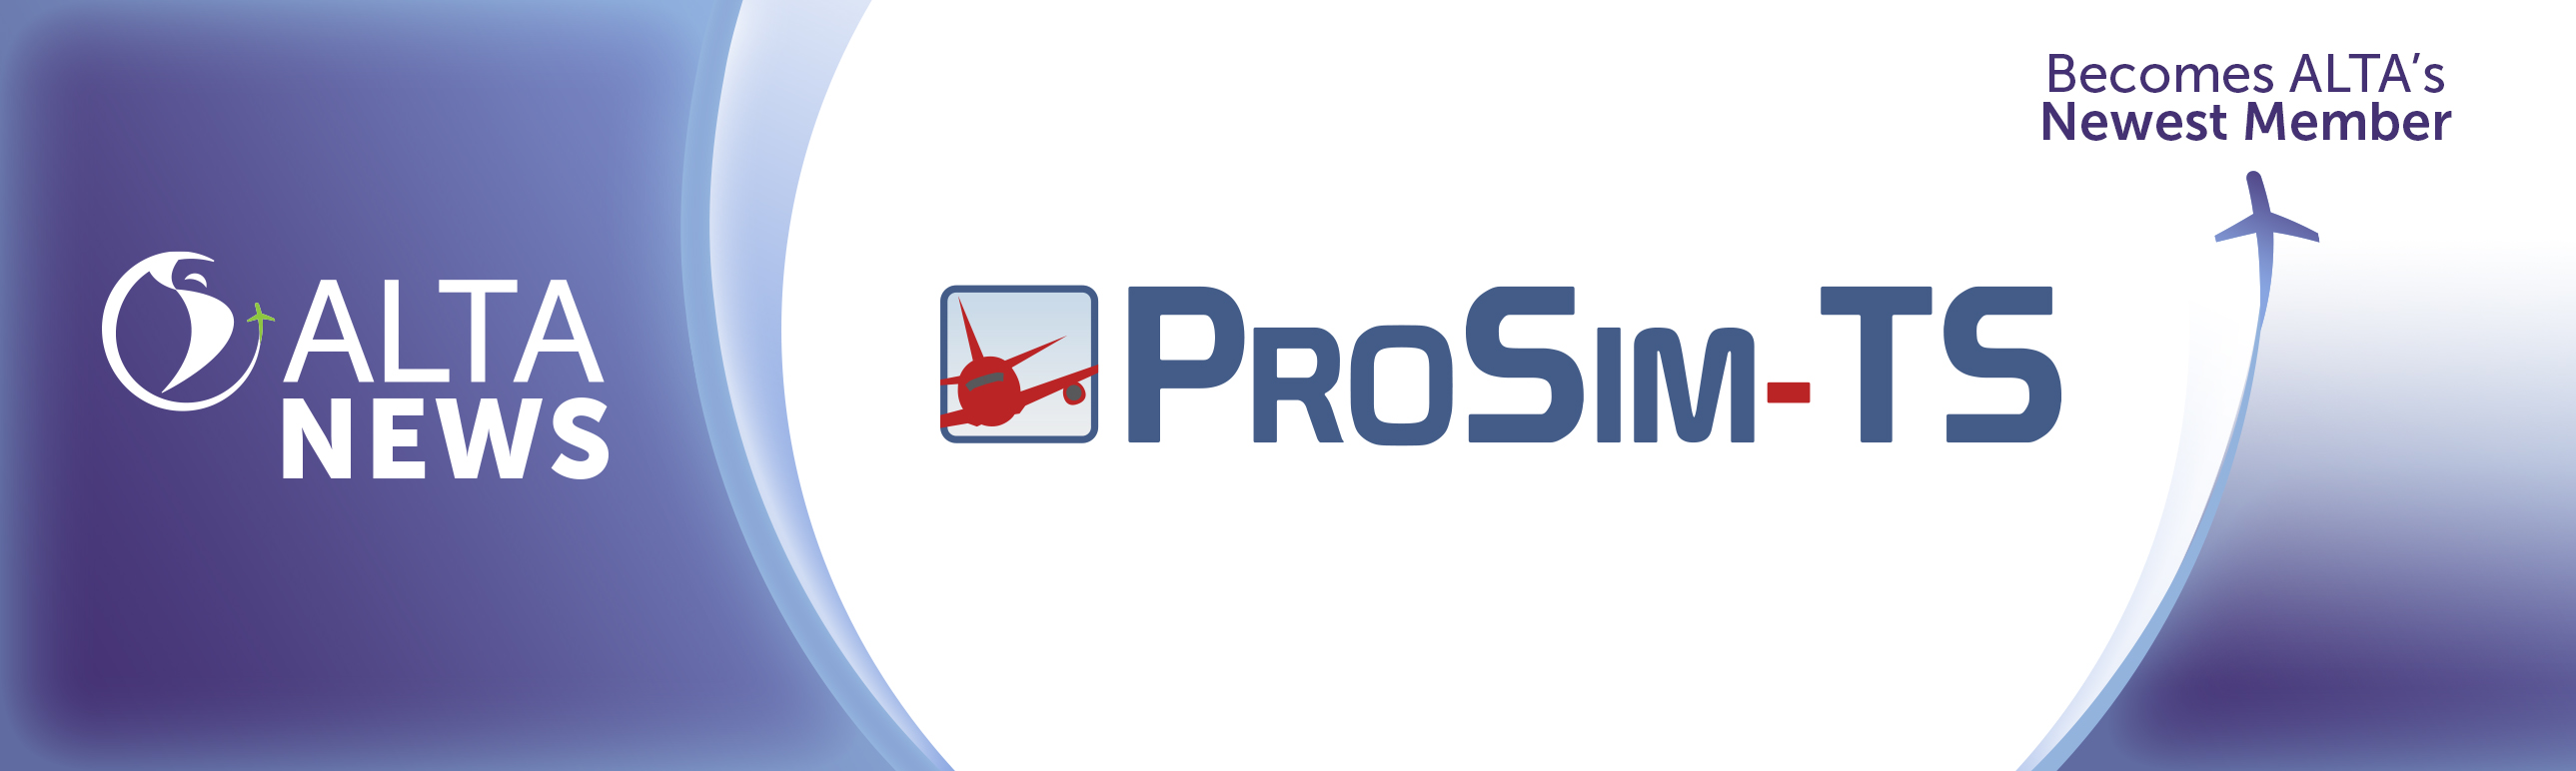 ALTA NEWS - Bem-vindo a bordo, ProSim Training Solutions!